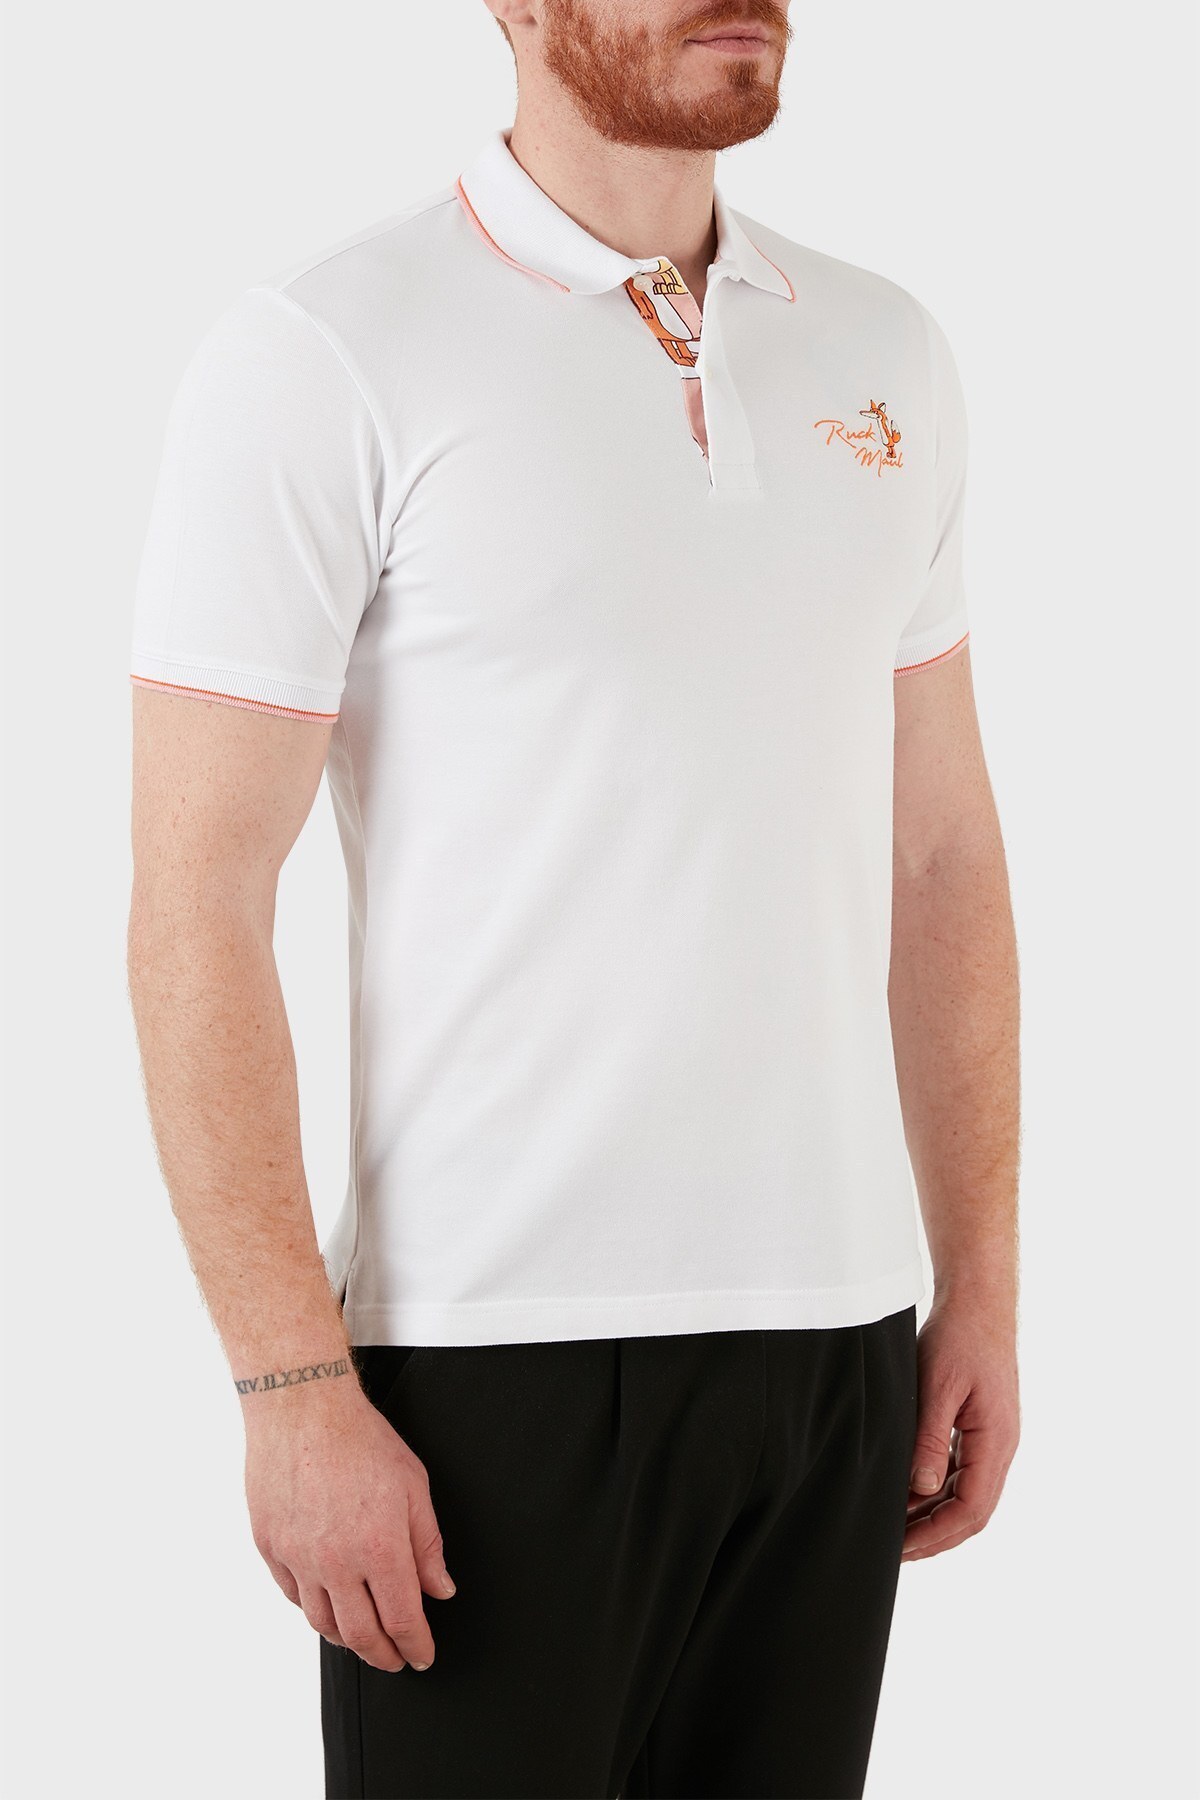 Ruck & Maul Pamuklu Düğmeli T Shirt Erkek Polo RMM01000716 BEYAZ